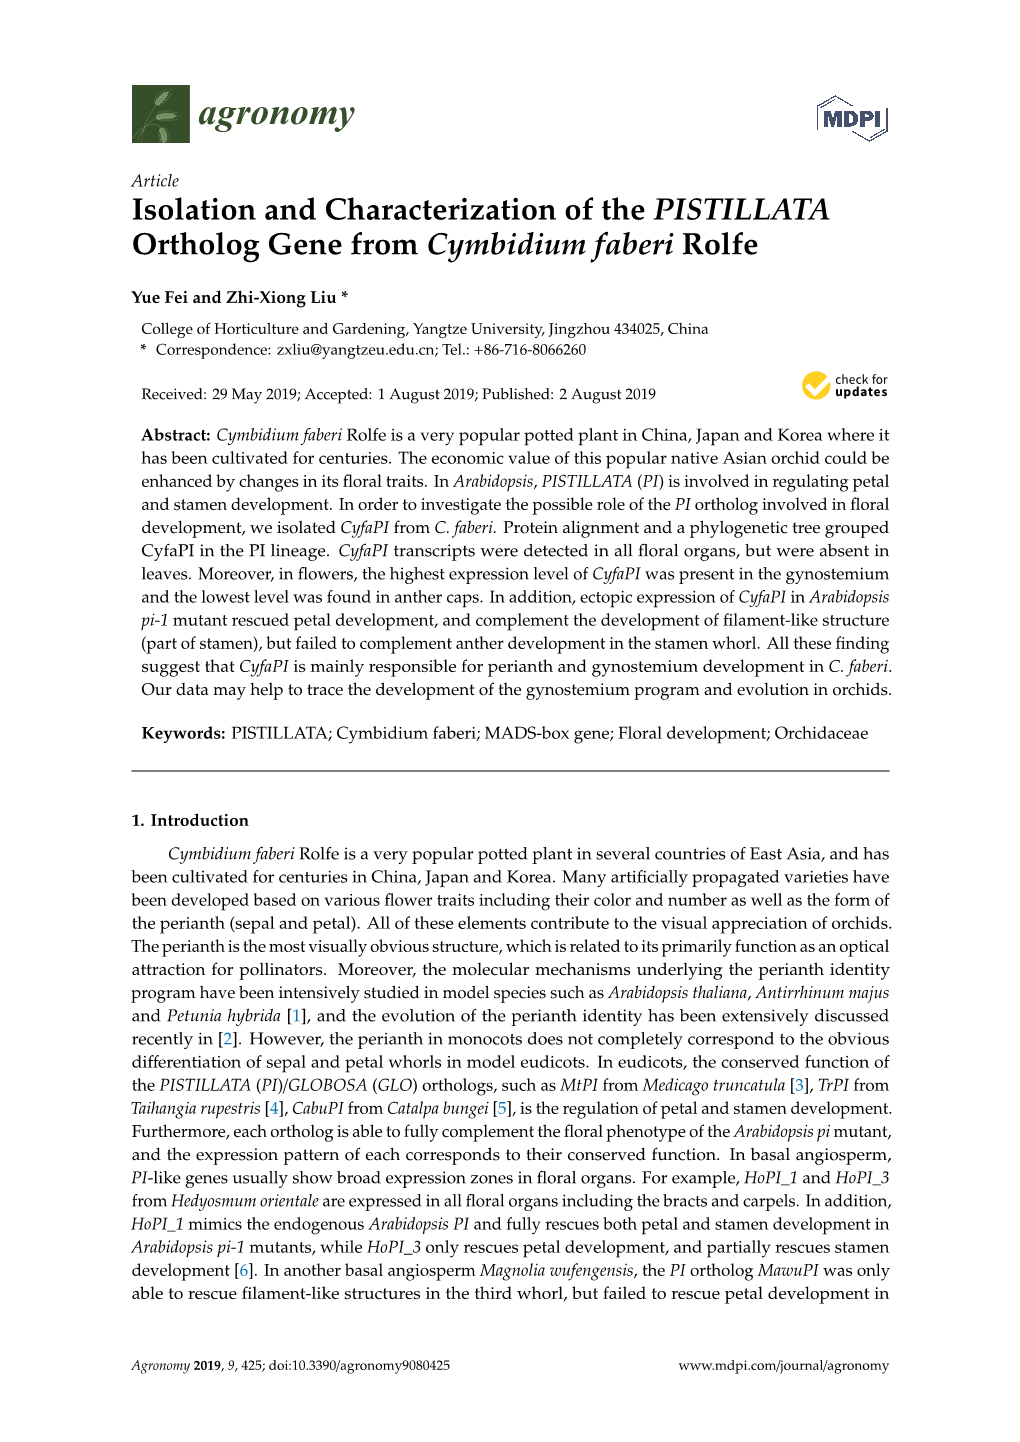 Isolation and Characterization of the PISTILLATA Ortholog Gene from Cymbidium Faberi Rolfe